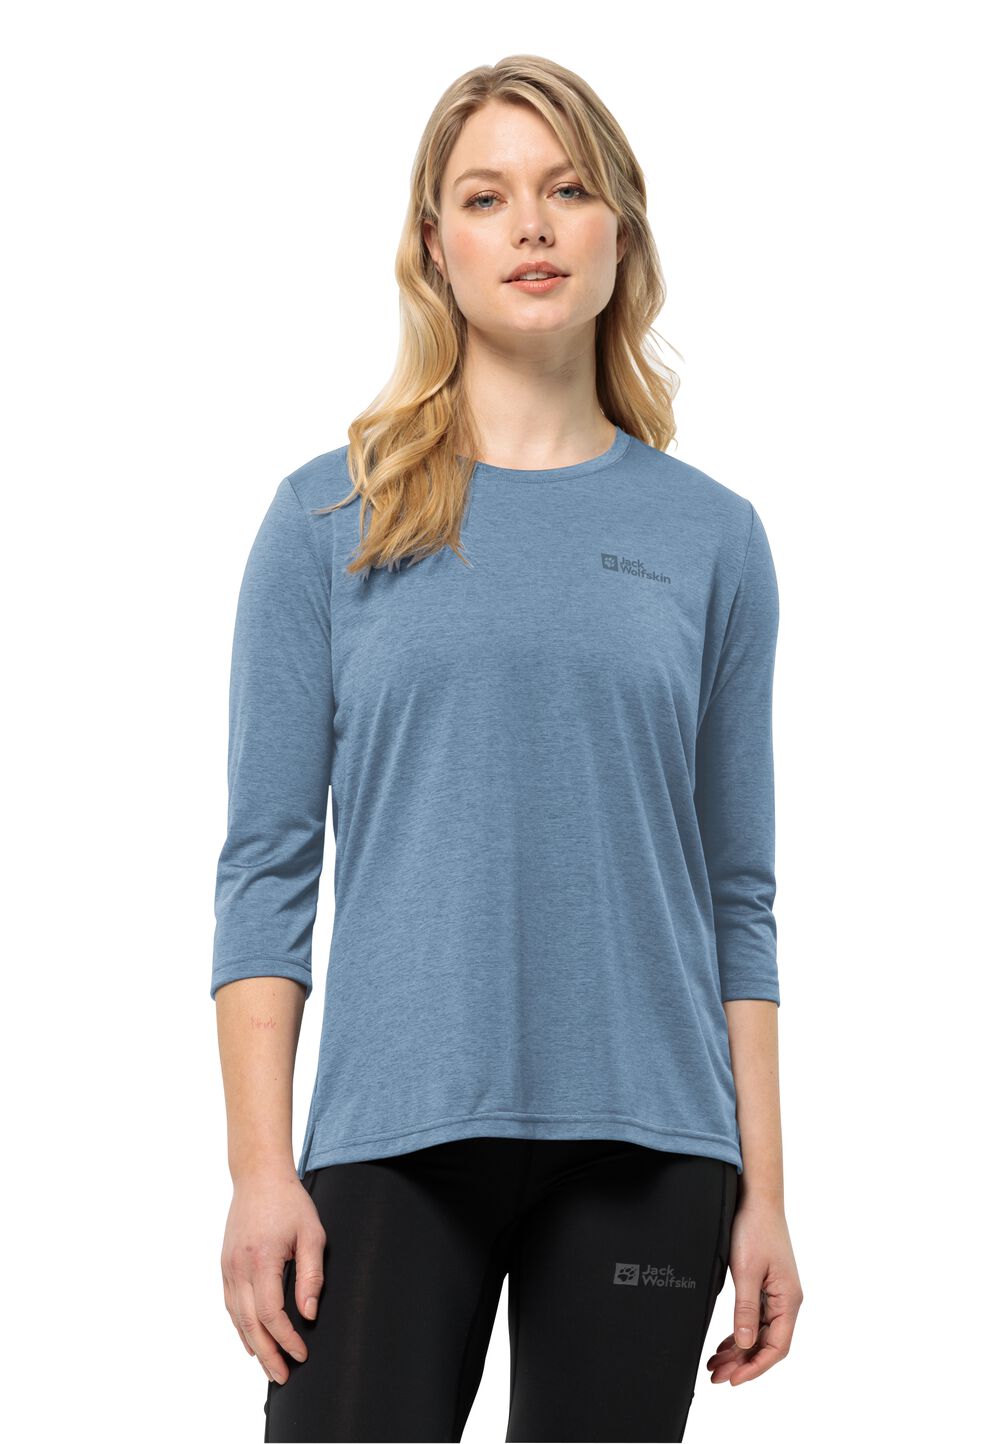 Jack Wolfskin Crosstrail 3 4 T-Shirt Women Functioneel shirt Dames M elemental blue elemental blue